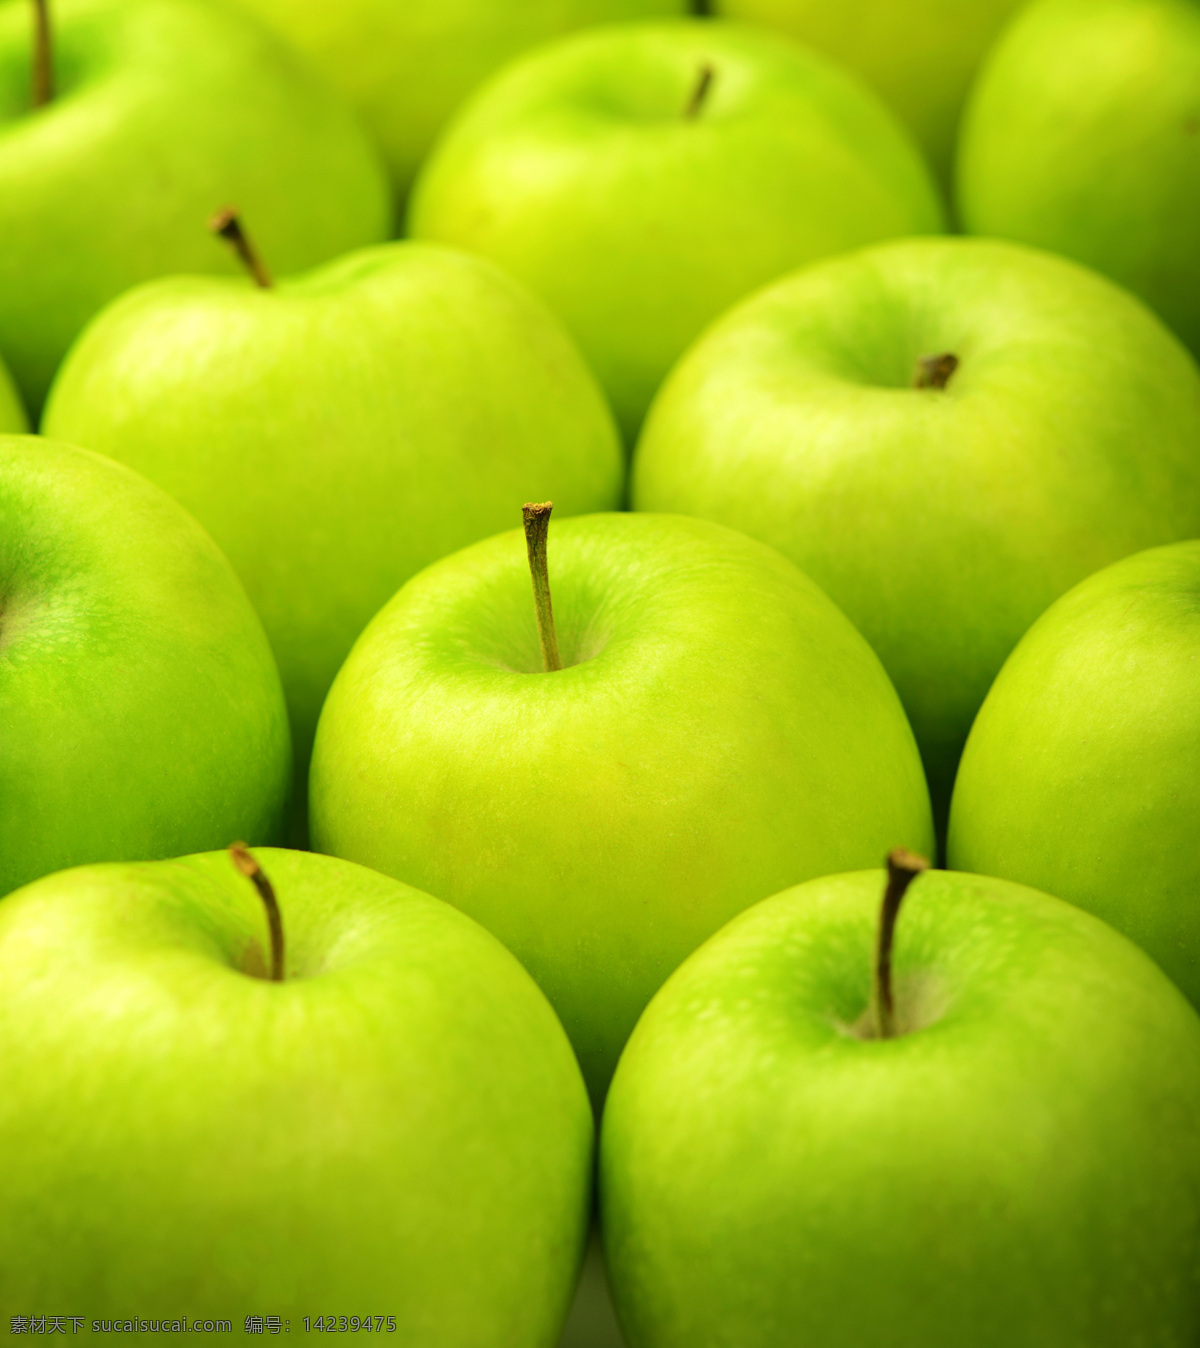 青苹果 背景图片 青苹果背景 苹果 新鲜苹果 新鲜水果 水果摄影 水果蔬菜 餐饮美食 绿色